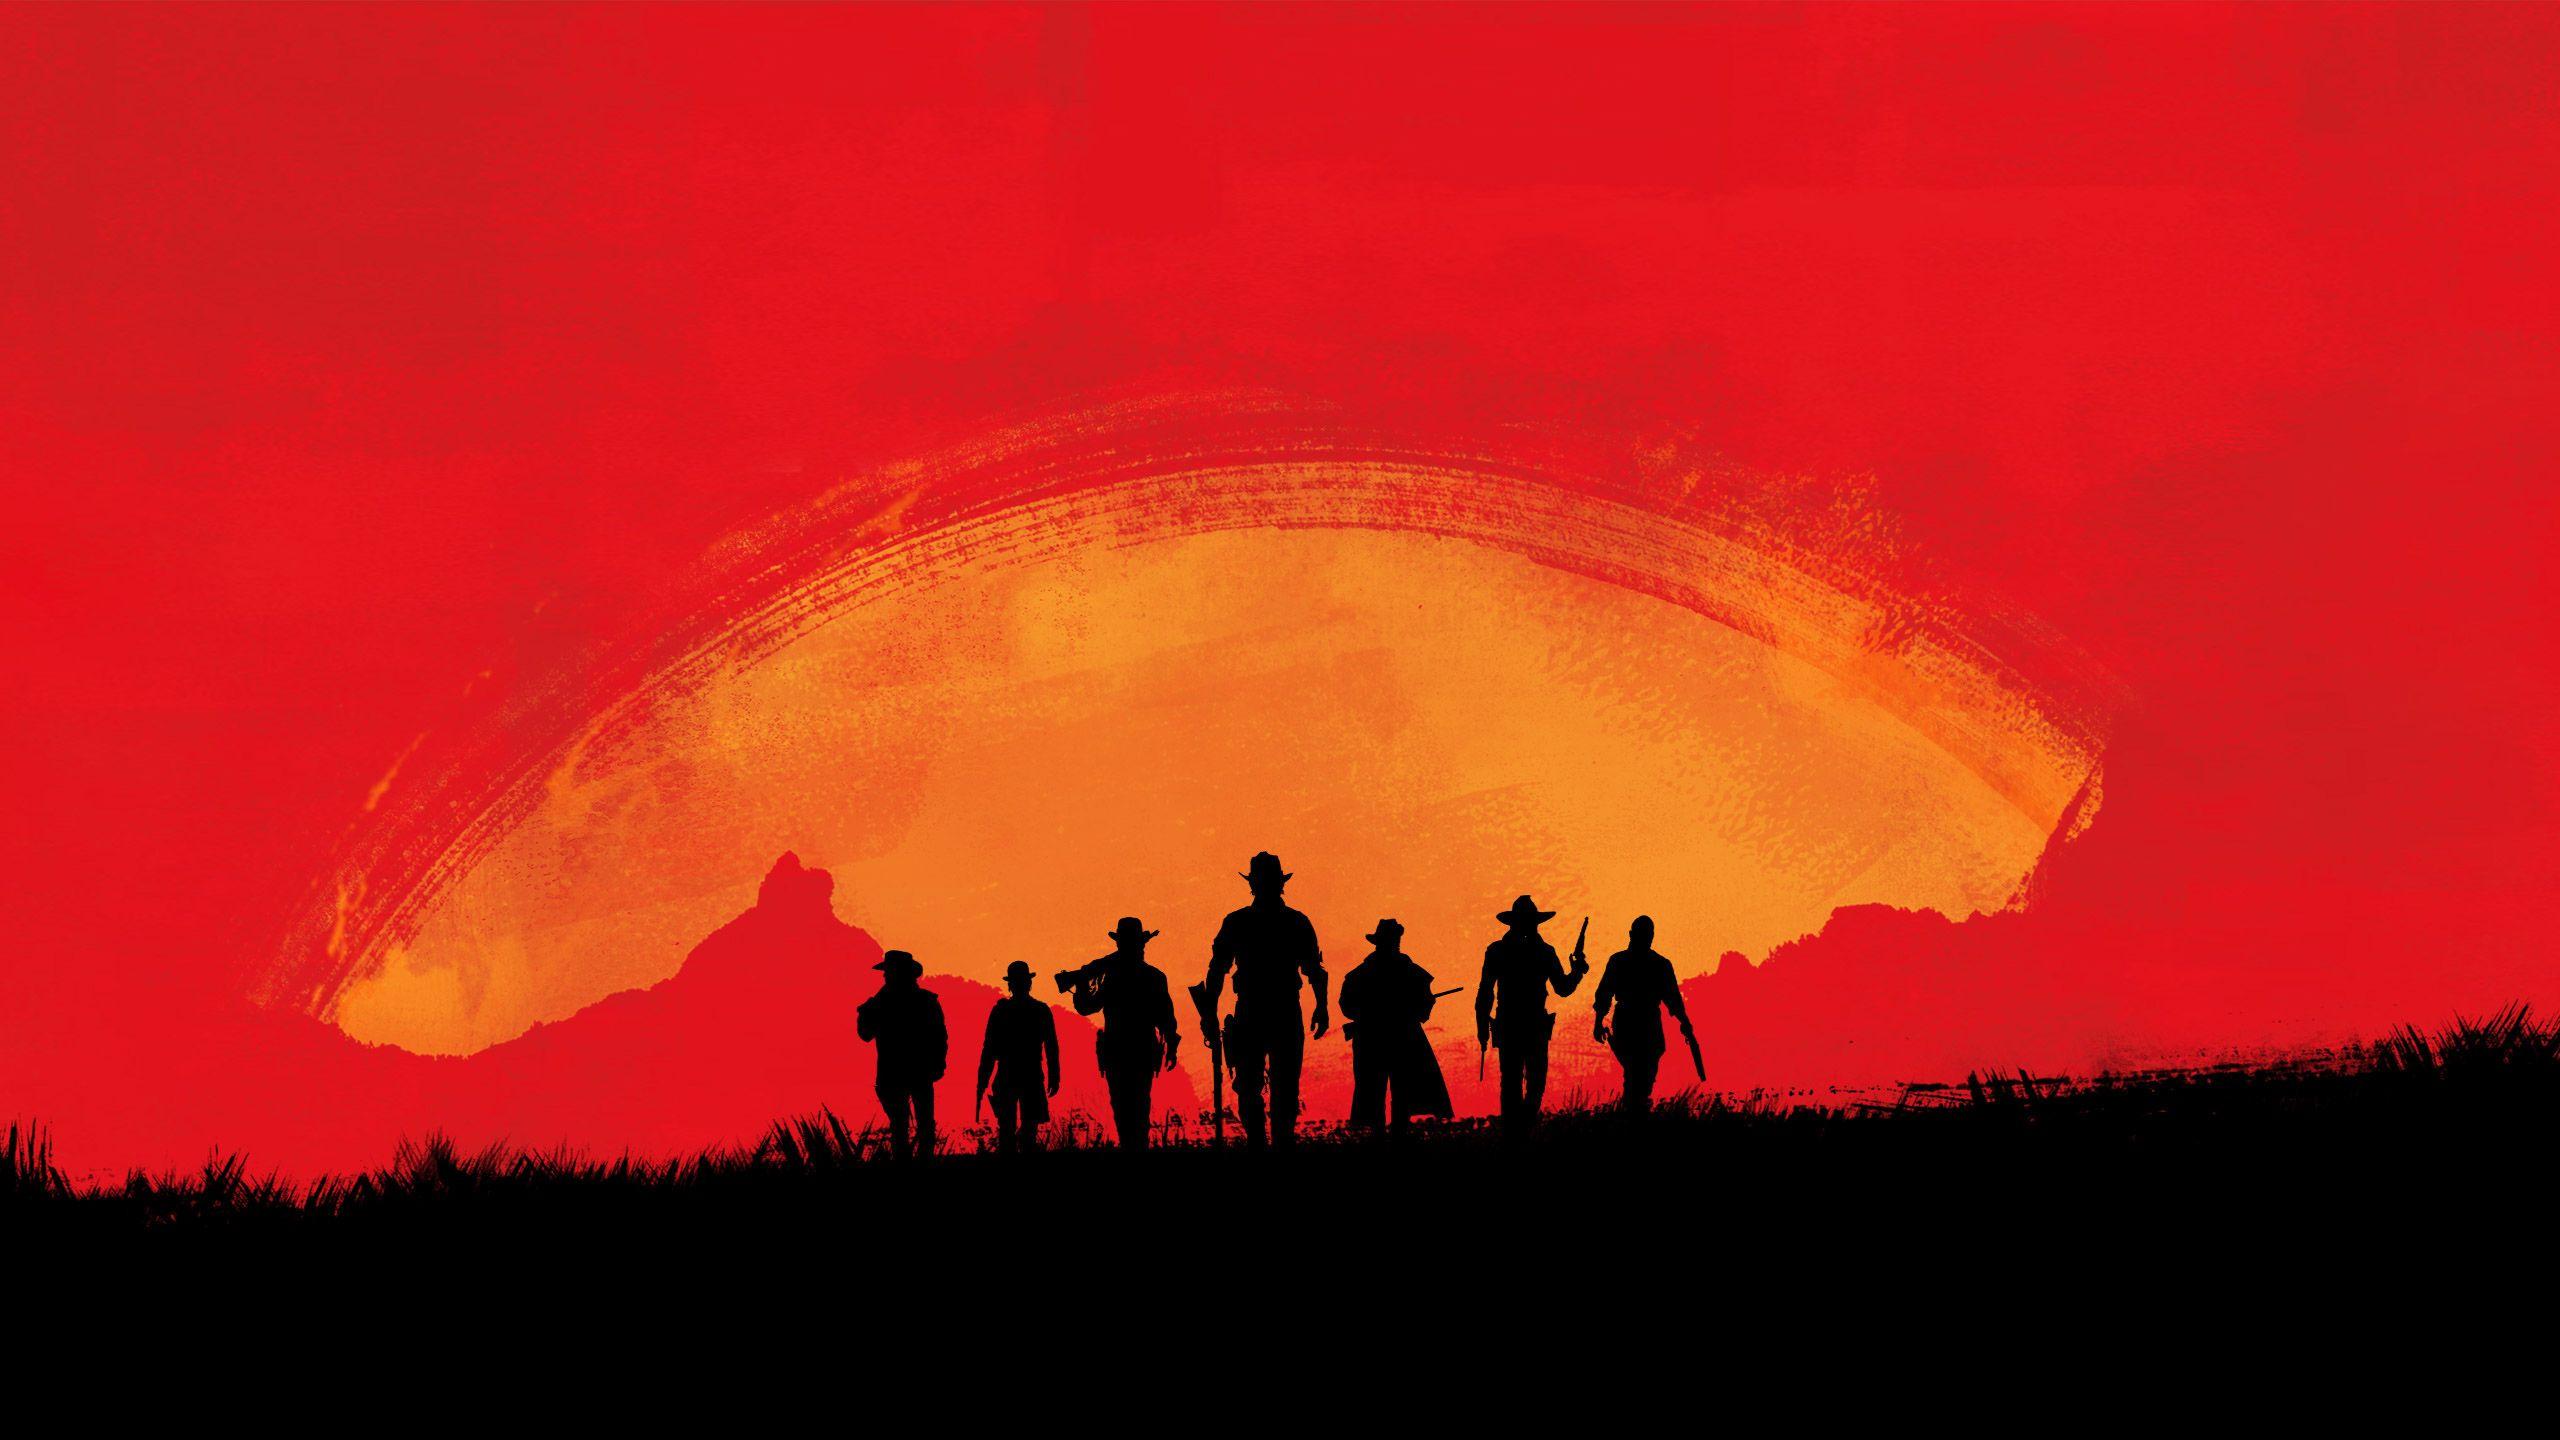 Hãy cùng nhau khám phá hình nền Red Dead Online đầy kịch tính. Những hình ảnh đẹp mắt với các nhân vật khác nhau, cùng màu sắc và ánh sáng hoàn hảo sẽ khiến bạn muốn ngồi đùa game cả ngày.